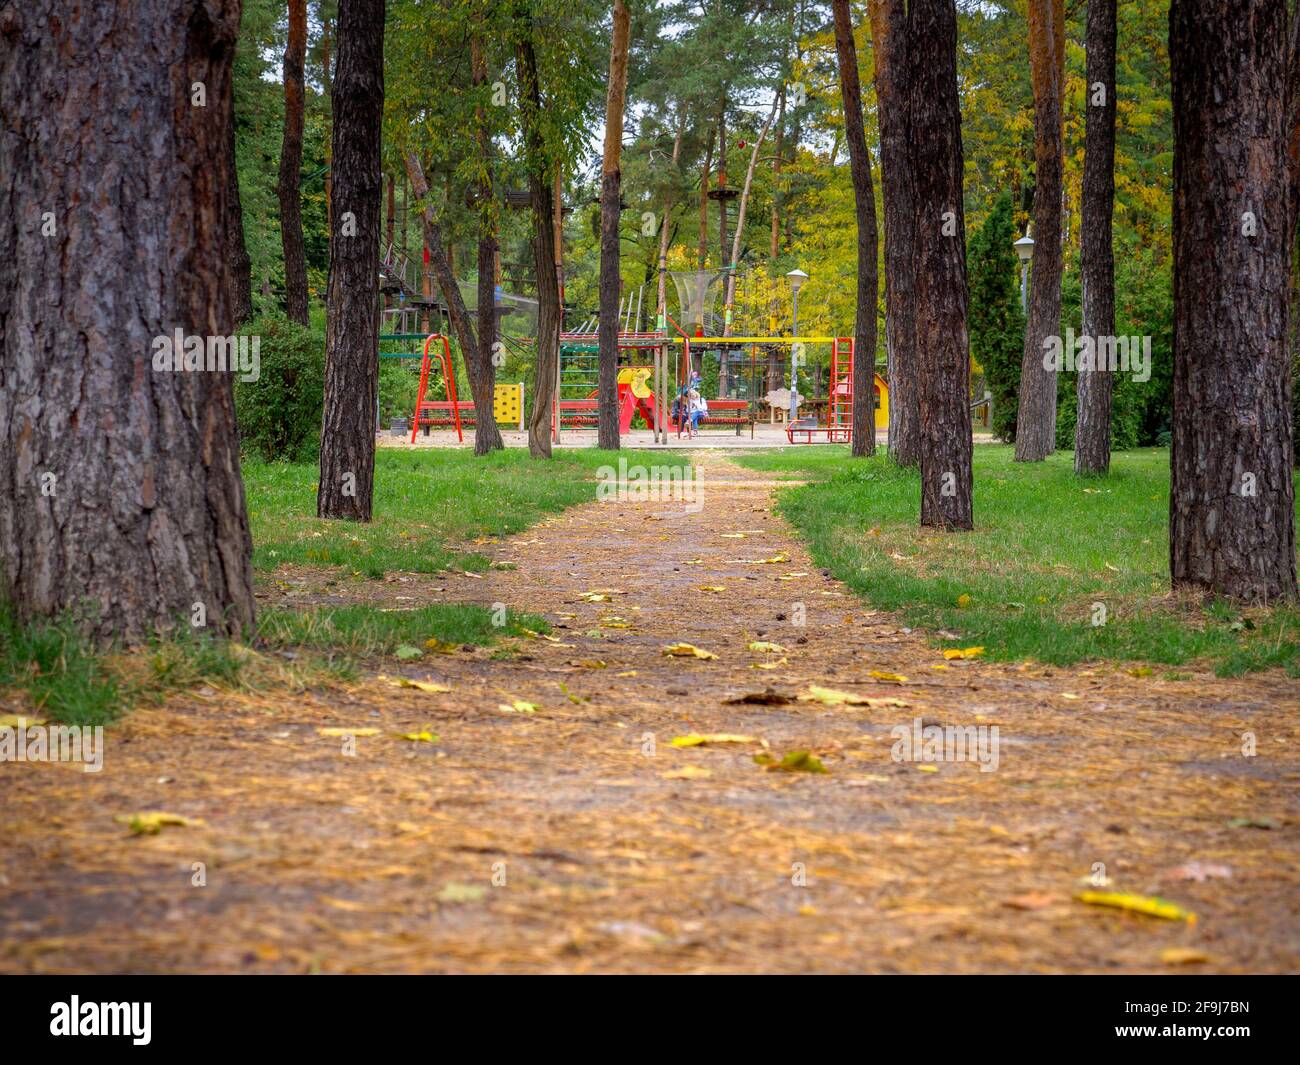 Blick über einen Parkweg mit gelb gefallenen Blättern und Tannennadeln, der zum farbenfrohen Kinderspielplatz und Seilpark führt. Spielen, Gehen und Ausruhen. Stockfoto